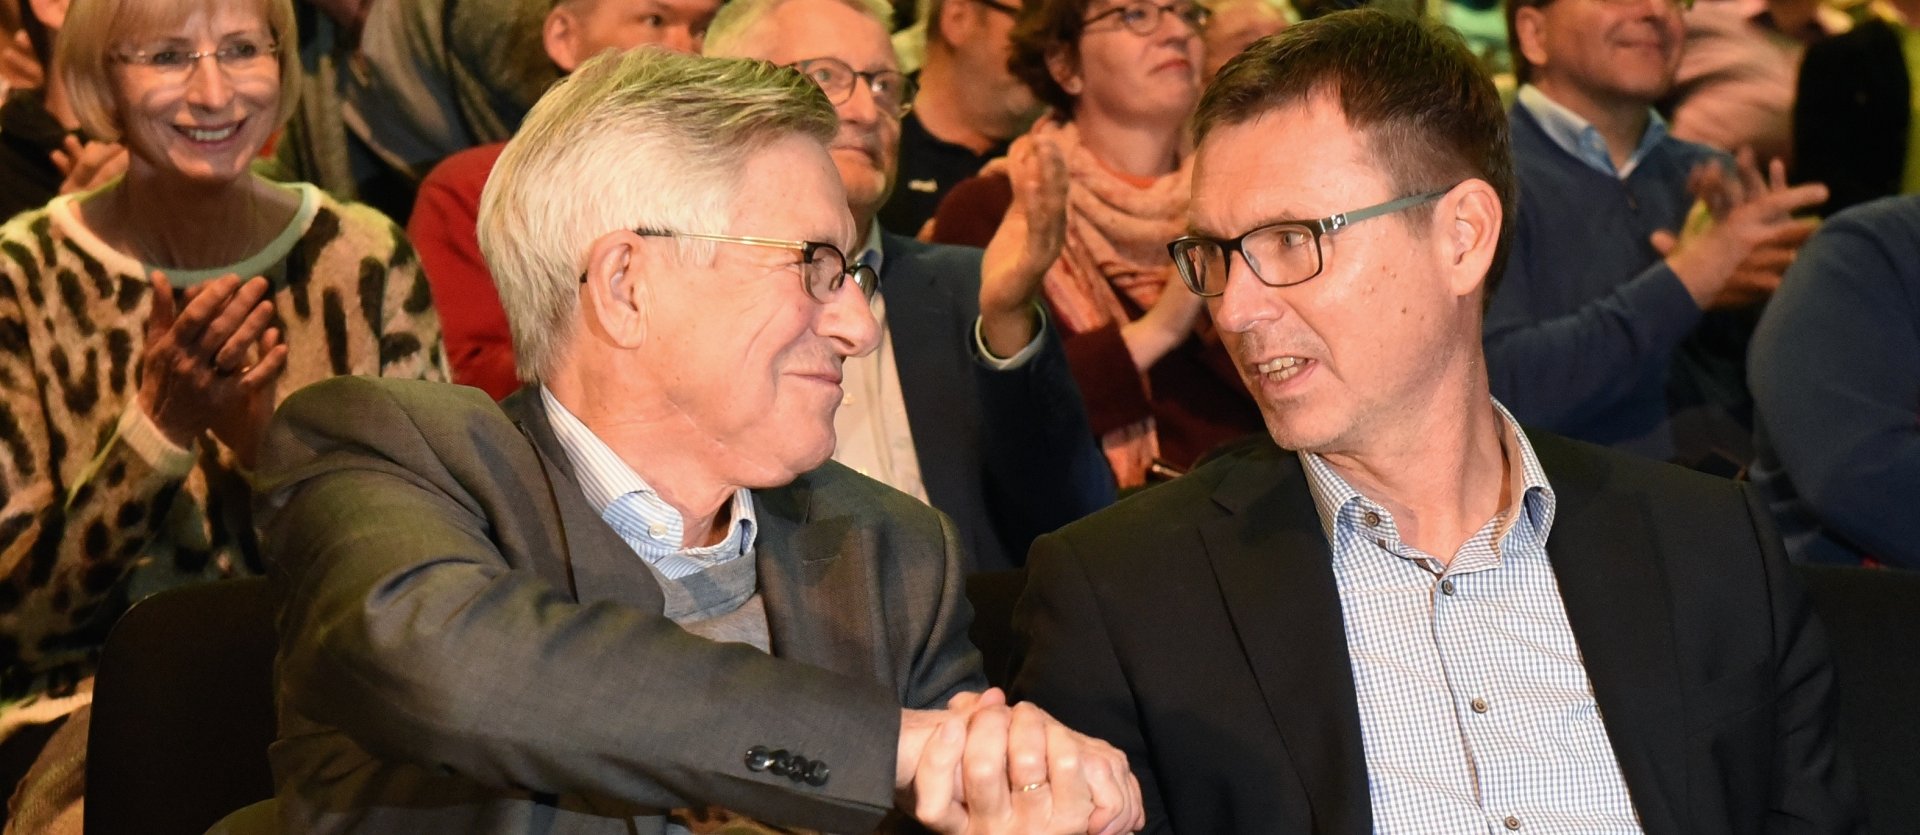 Als das Ergebnis des ersten Wahlgangs verkündet worden war, stand fest: Stefan Hofmann ist neuer Vorsitzender des FSV Mainz 05. Erster Gratulant war sein Konkurrent Jürgen Doetz.